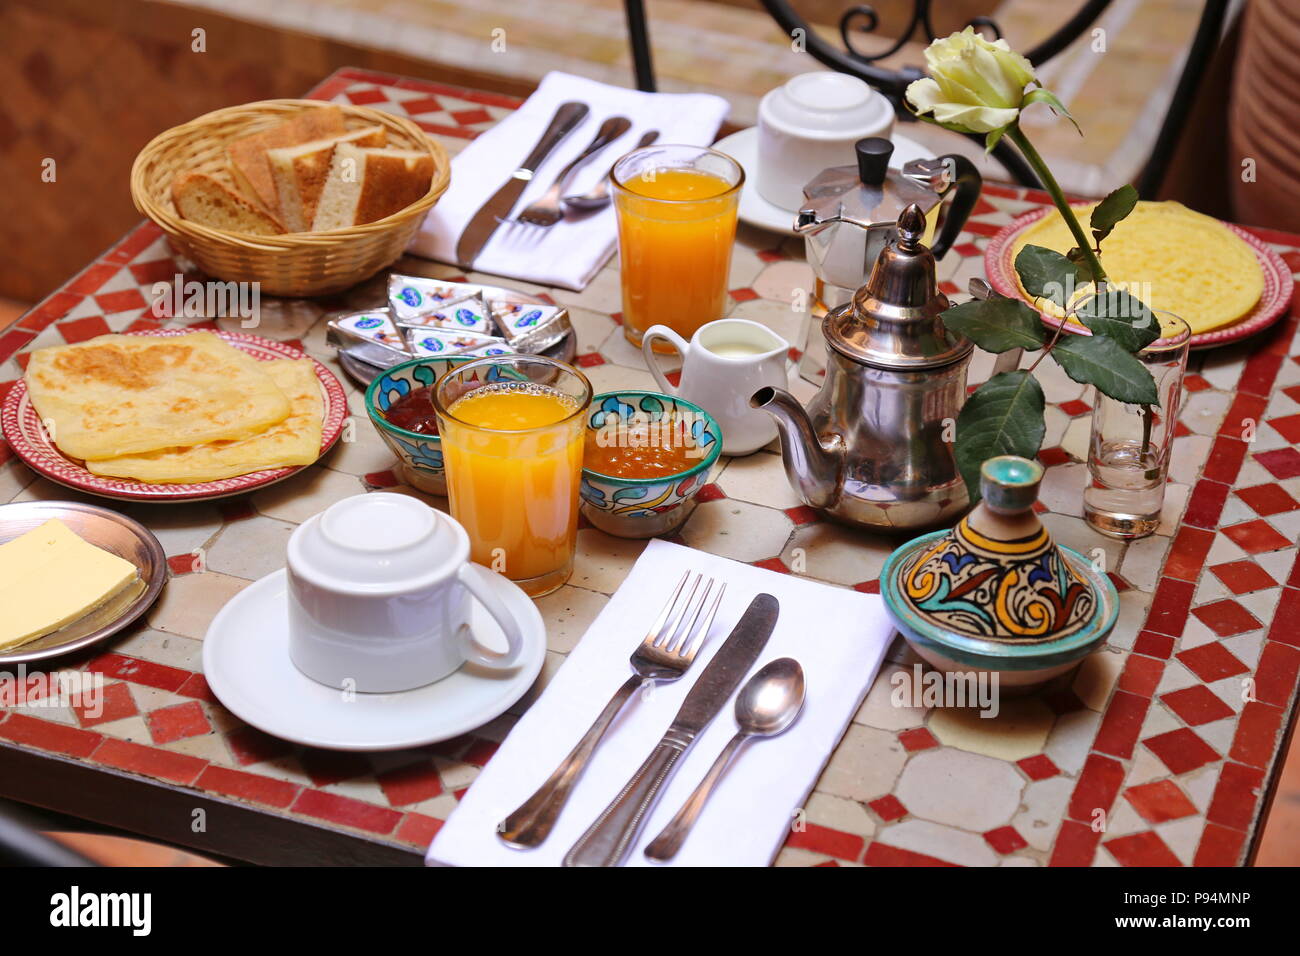 Délicieux petit-déjeuner de style marocain servi dans riad traditionnel marocain (hôtel) Banque D'Images